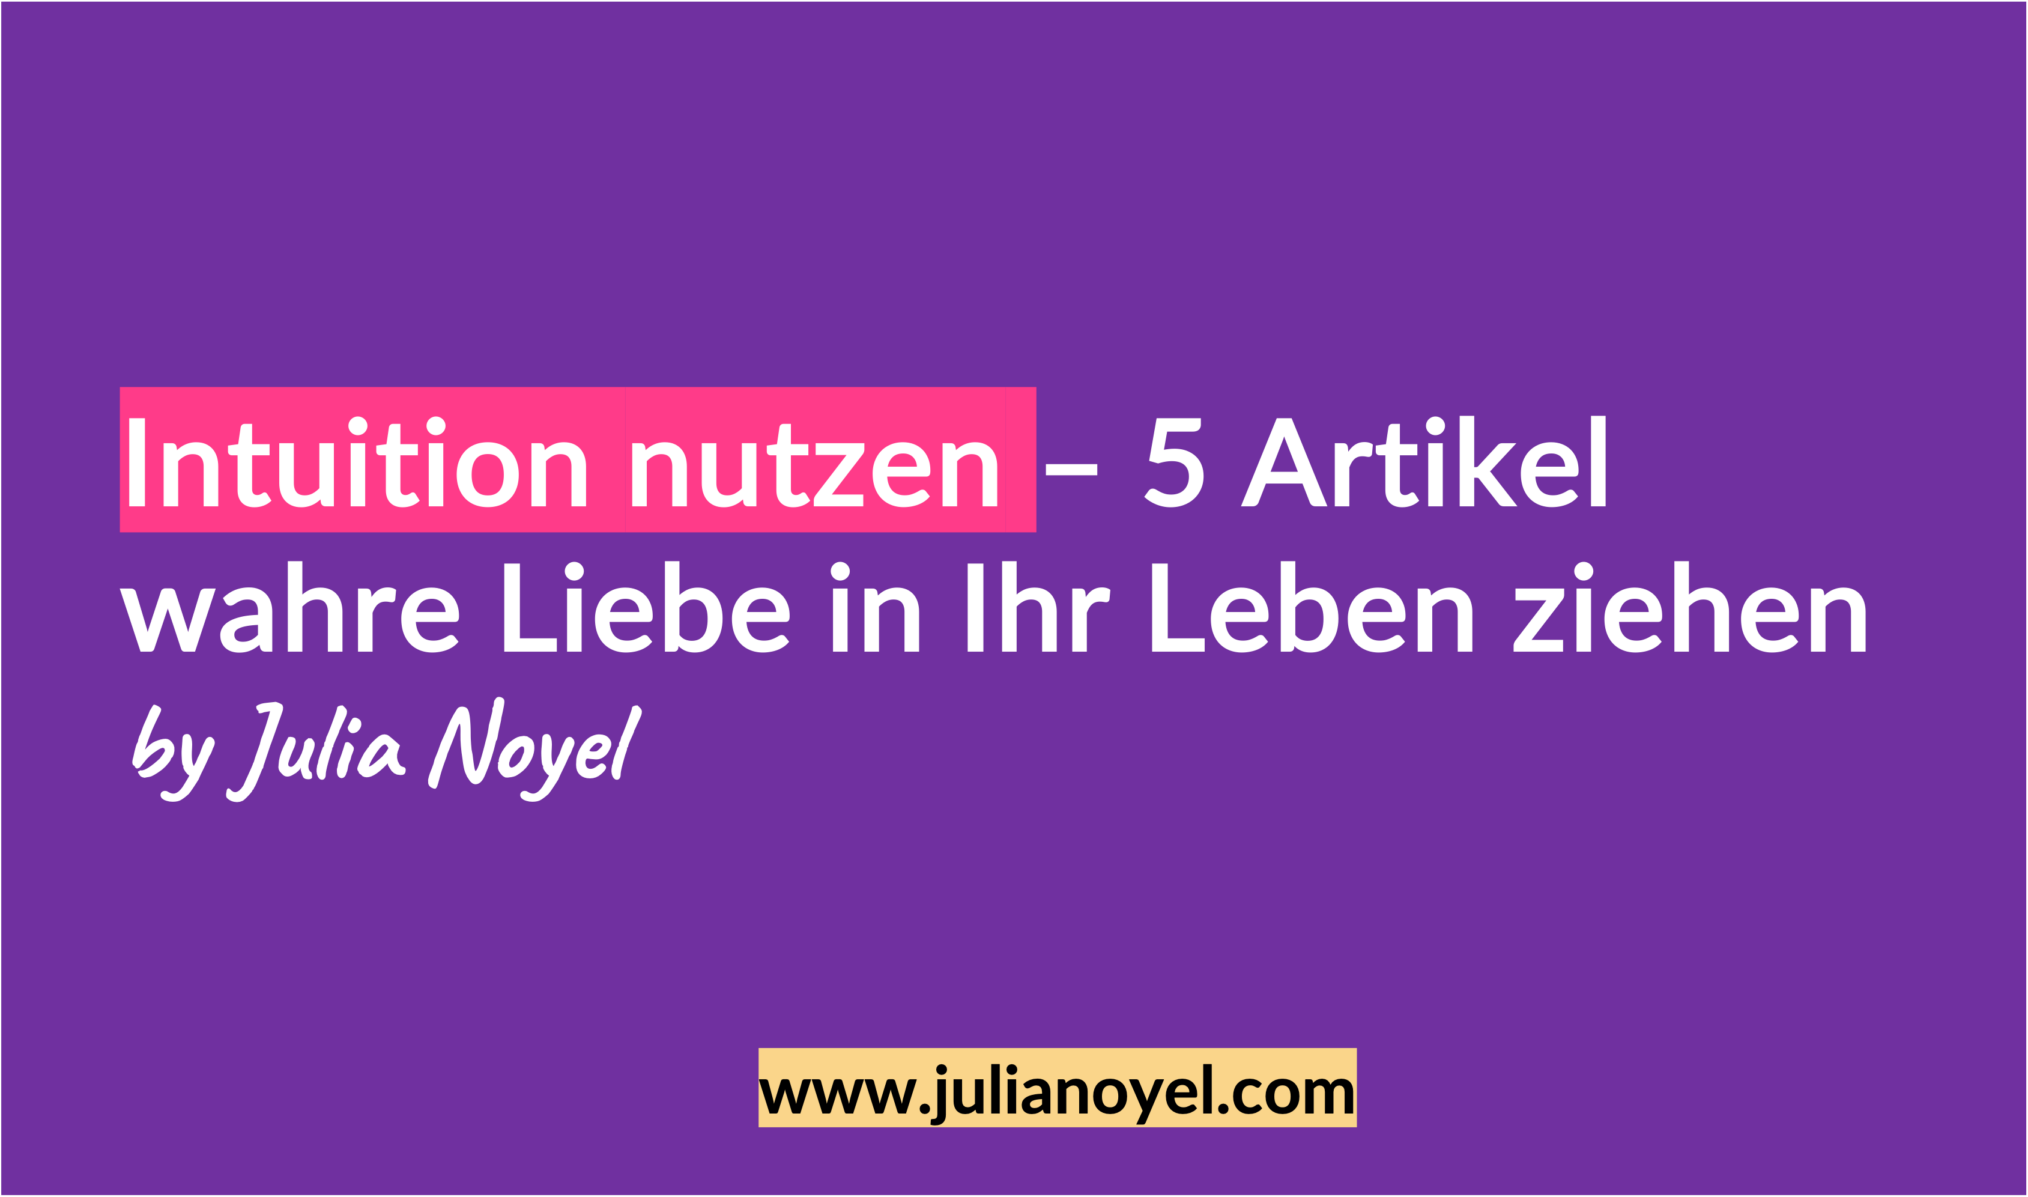 Intuition nutzen – 5 Artikel wahre Liebe in Ihr Leben ziehen
by Julia Noyel